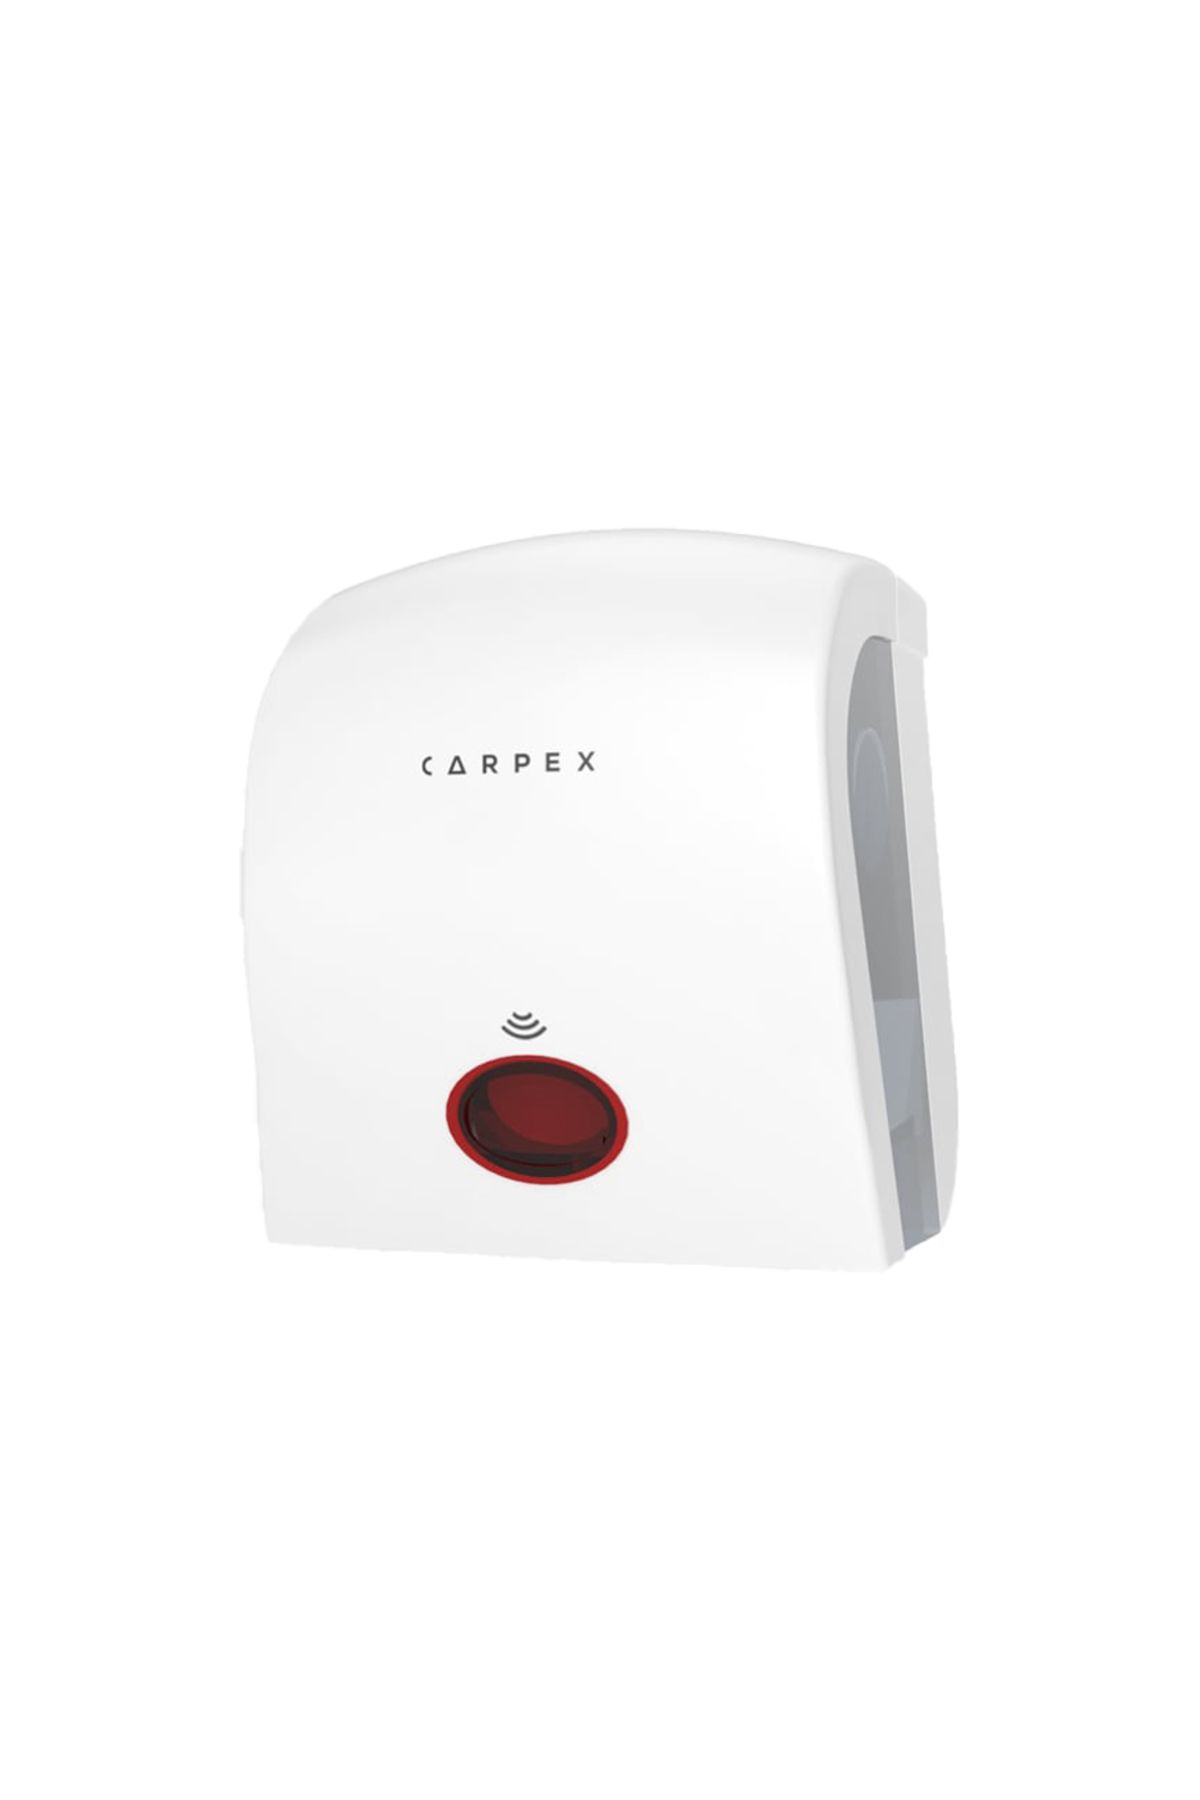 Carpex Otomatik Sensörlü Kağıt Havlu Dispenseri Beyaz